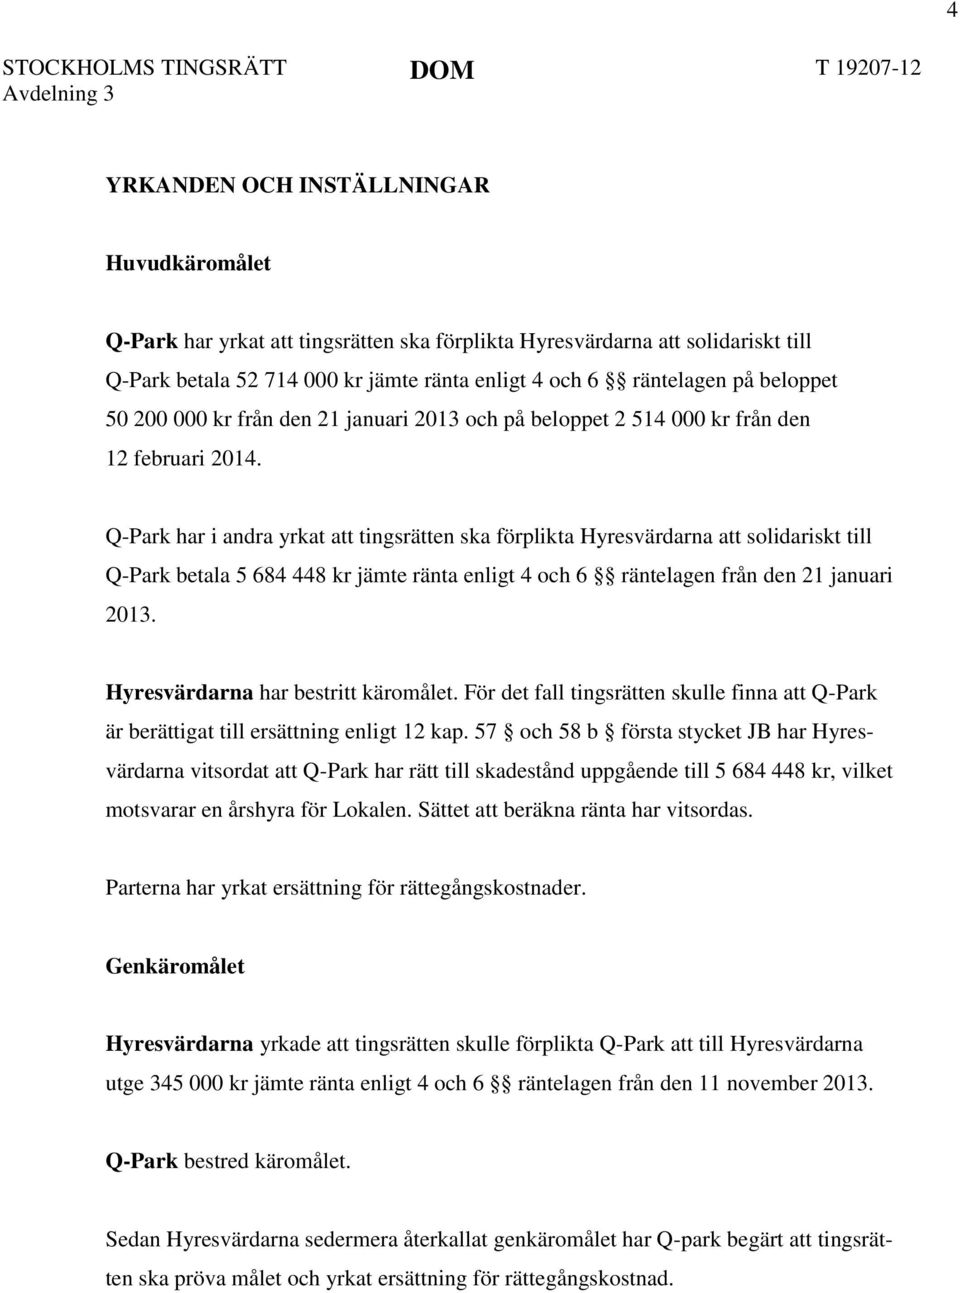 Q-Park har i andra yrkat att tingsrätten ska förplikta Hyresvärdarna att solidariskt till Q-Park betala 5 684 448 kr jämte ränta enligt 4 och 6 räntelagen från den 21 januari 2013.